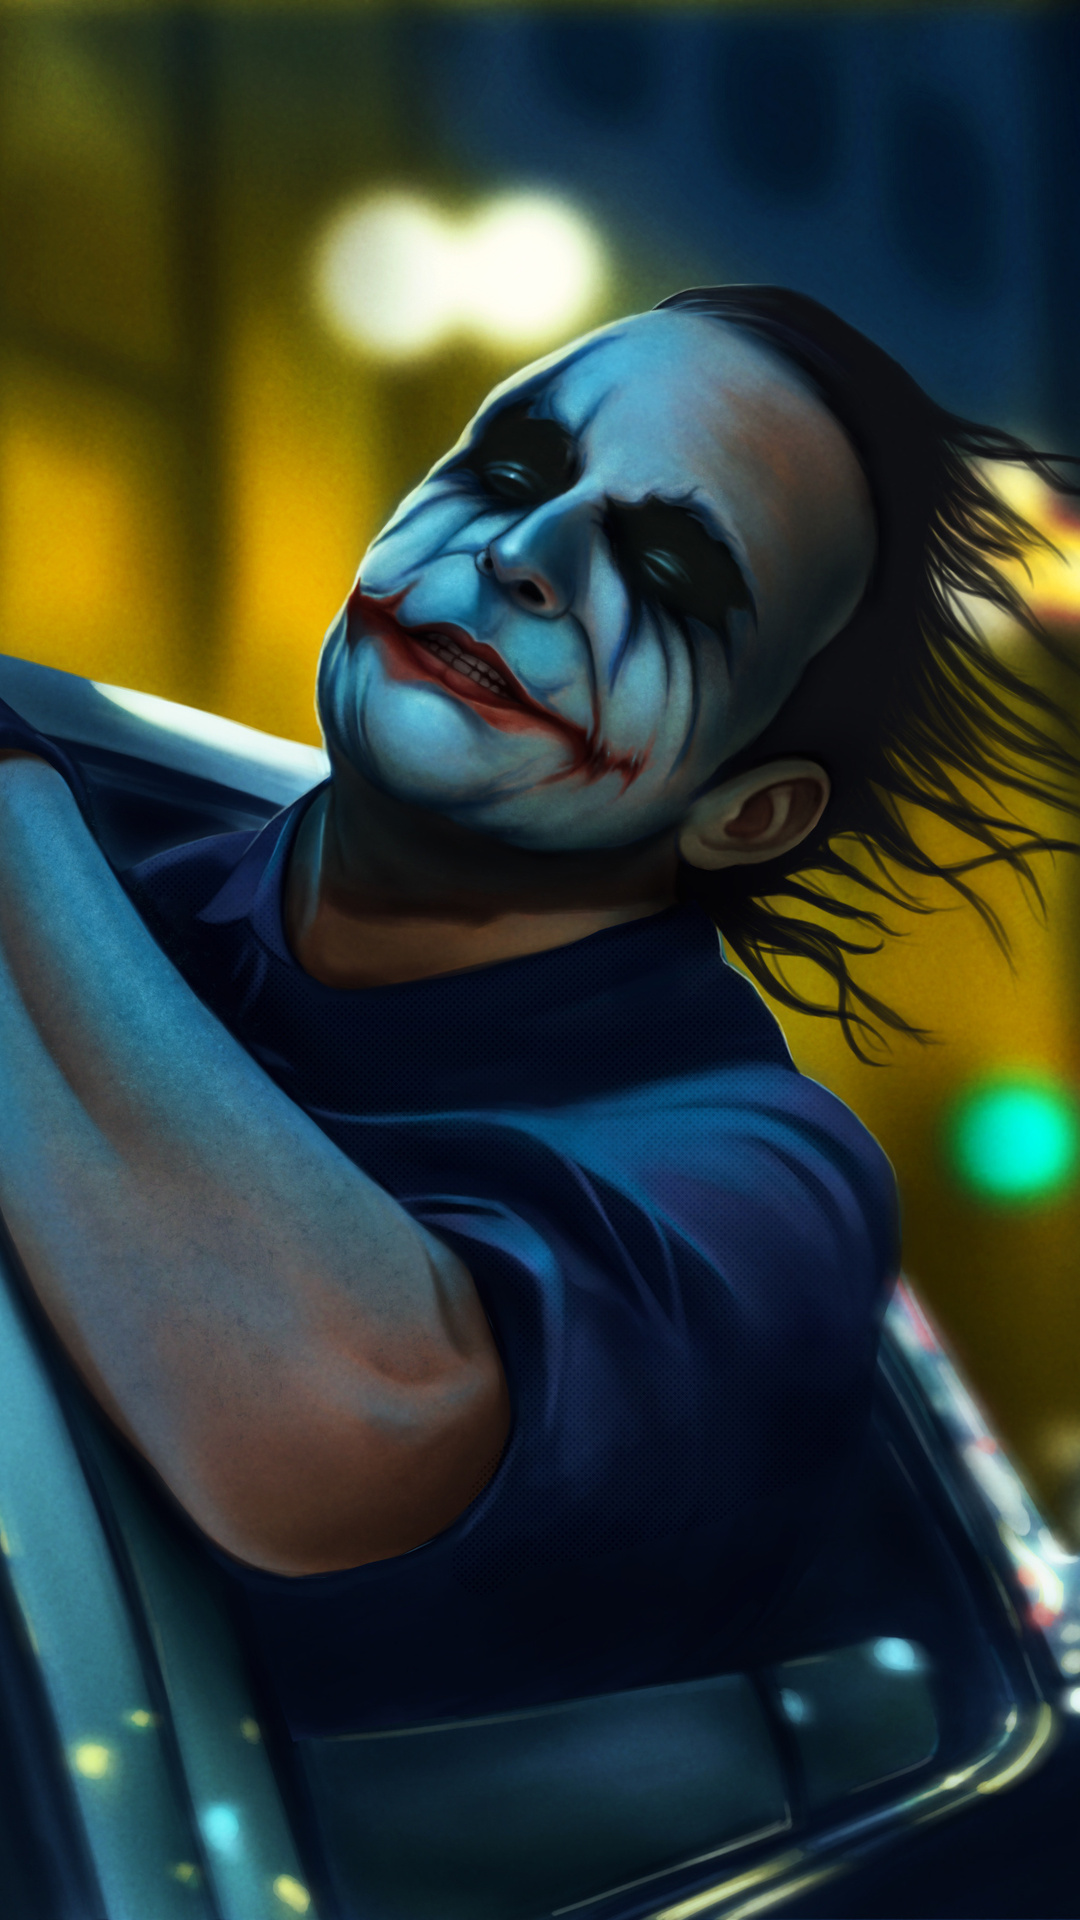 Black Ultra HD Joker Wallpapers - Top Những Hình Ảnh Đẹp